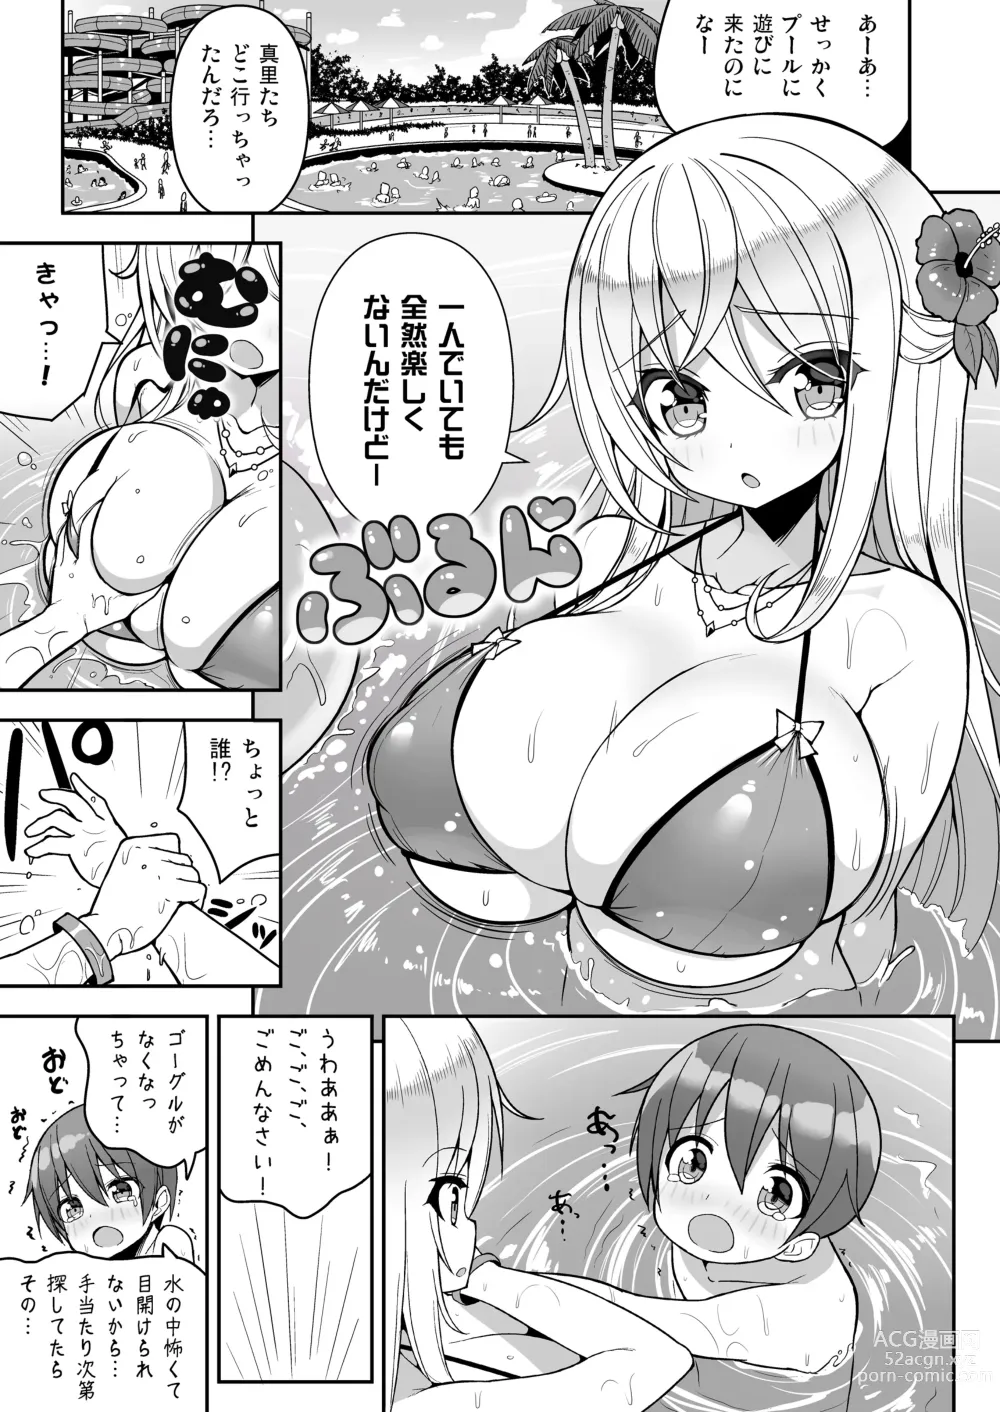 Page 4 of doujinshi Ikenai Bikini no Onee-san + Omake